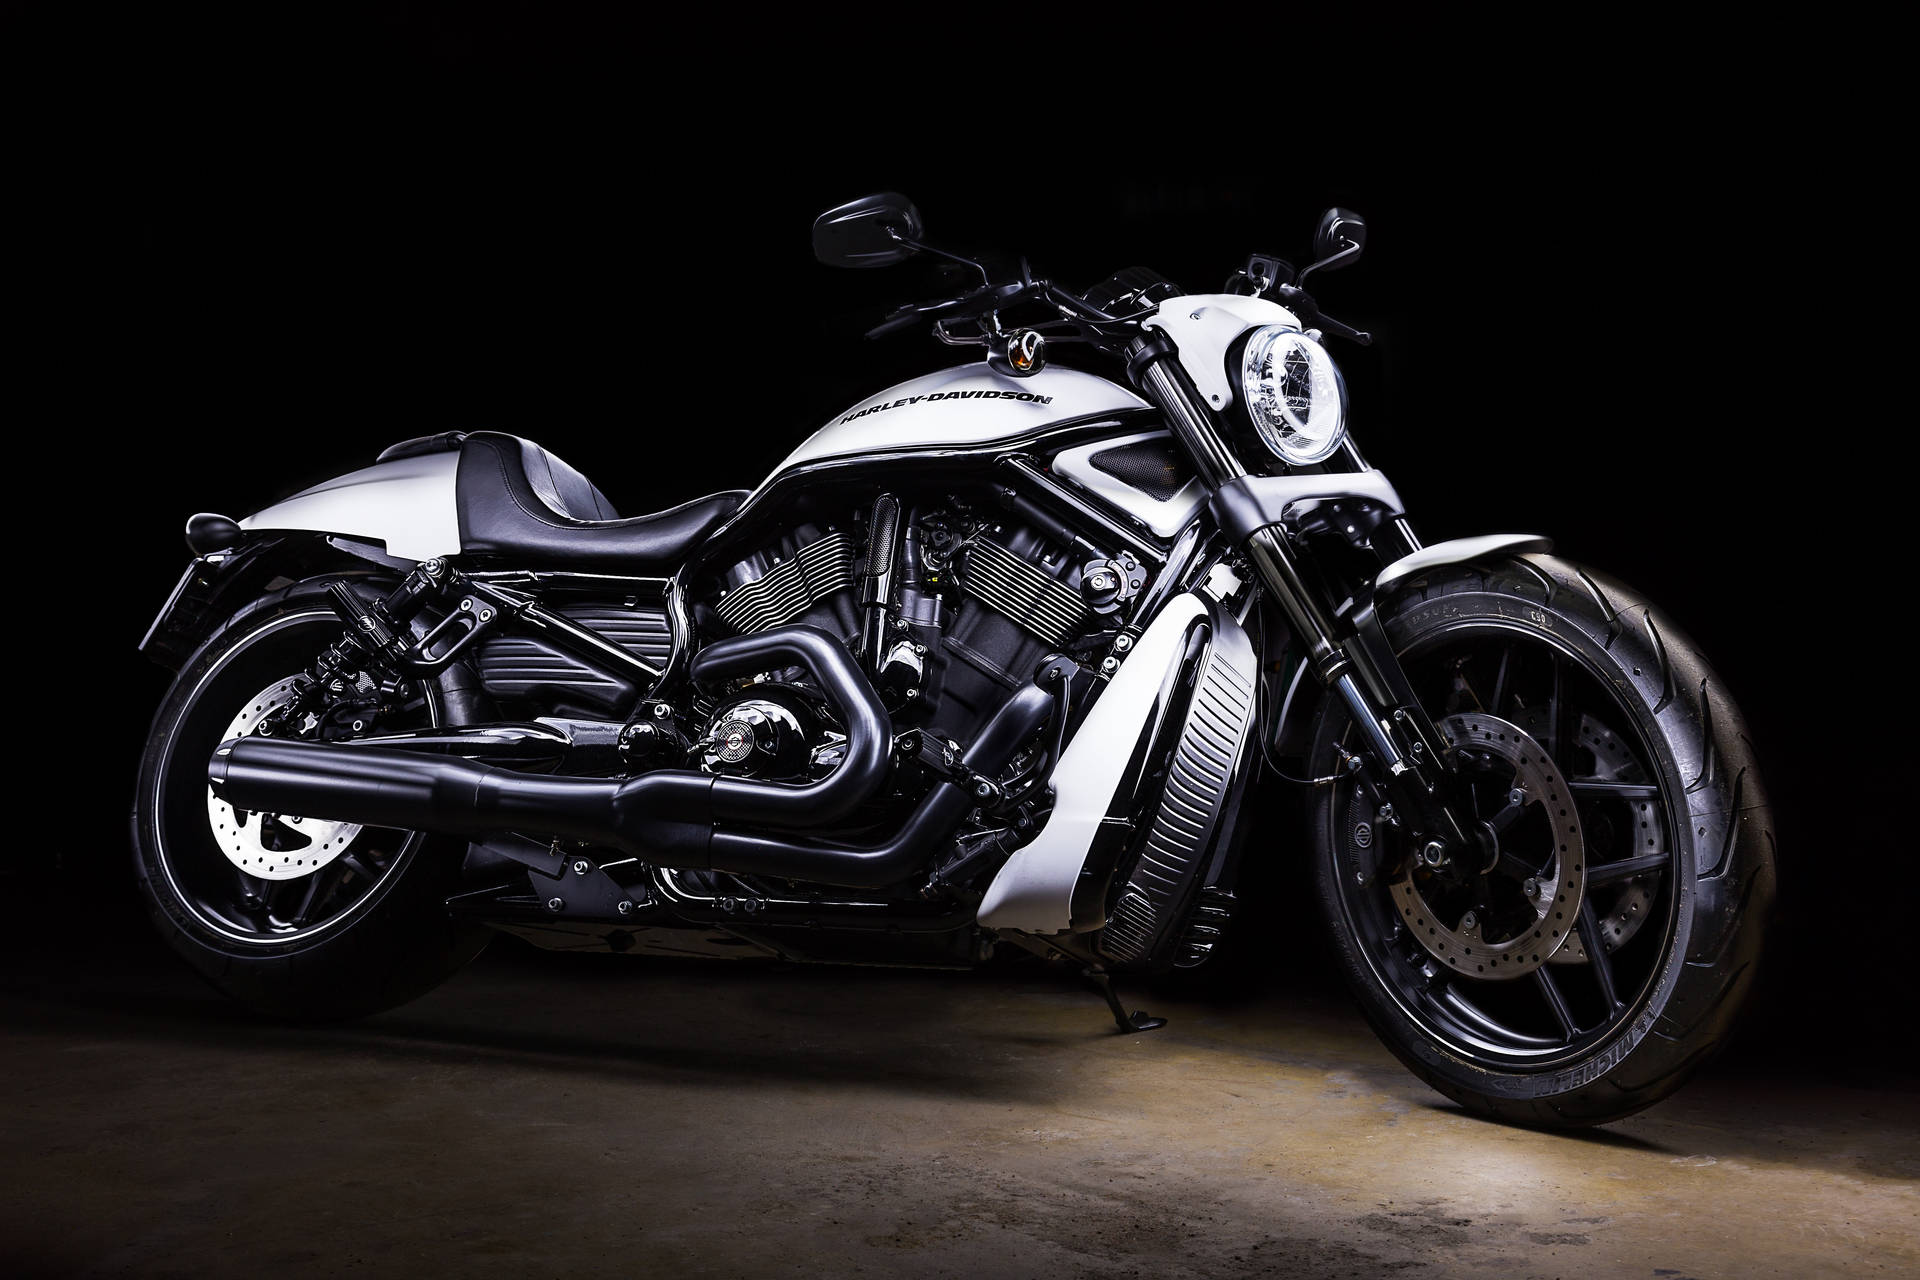 Light Harley Davidson In Dark Background